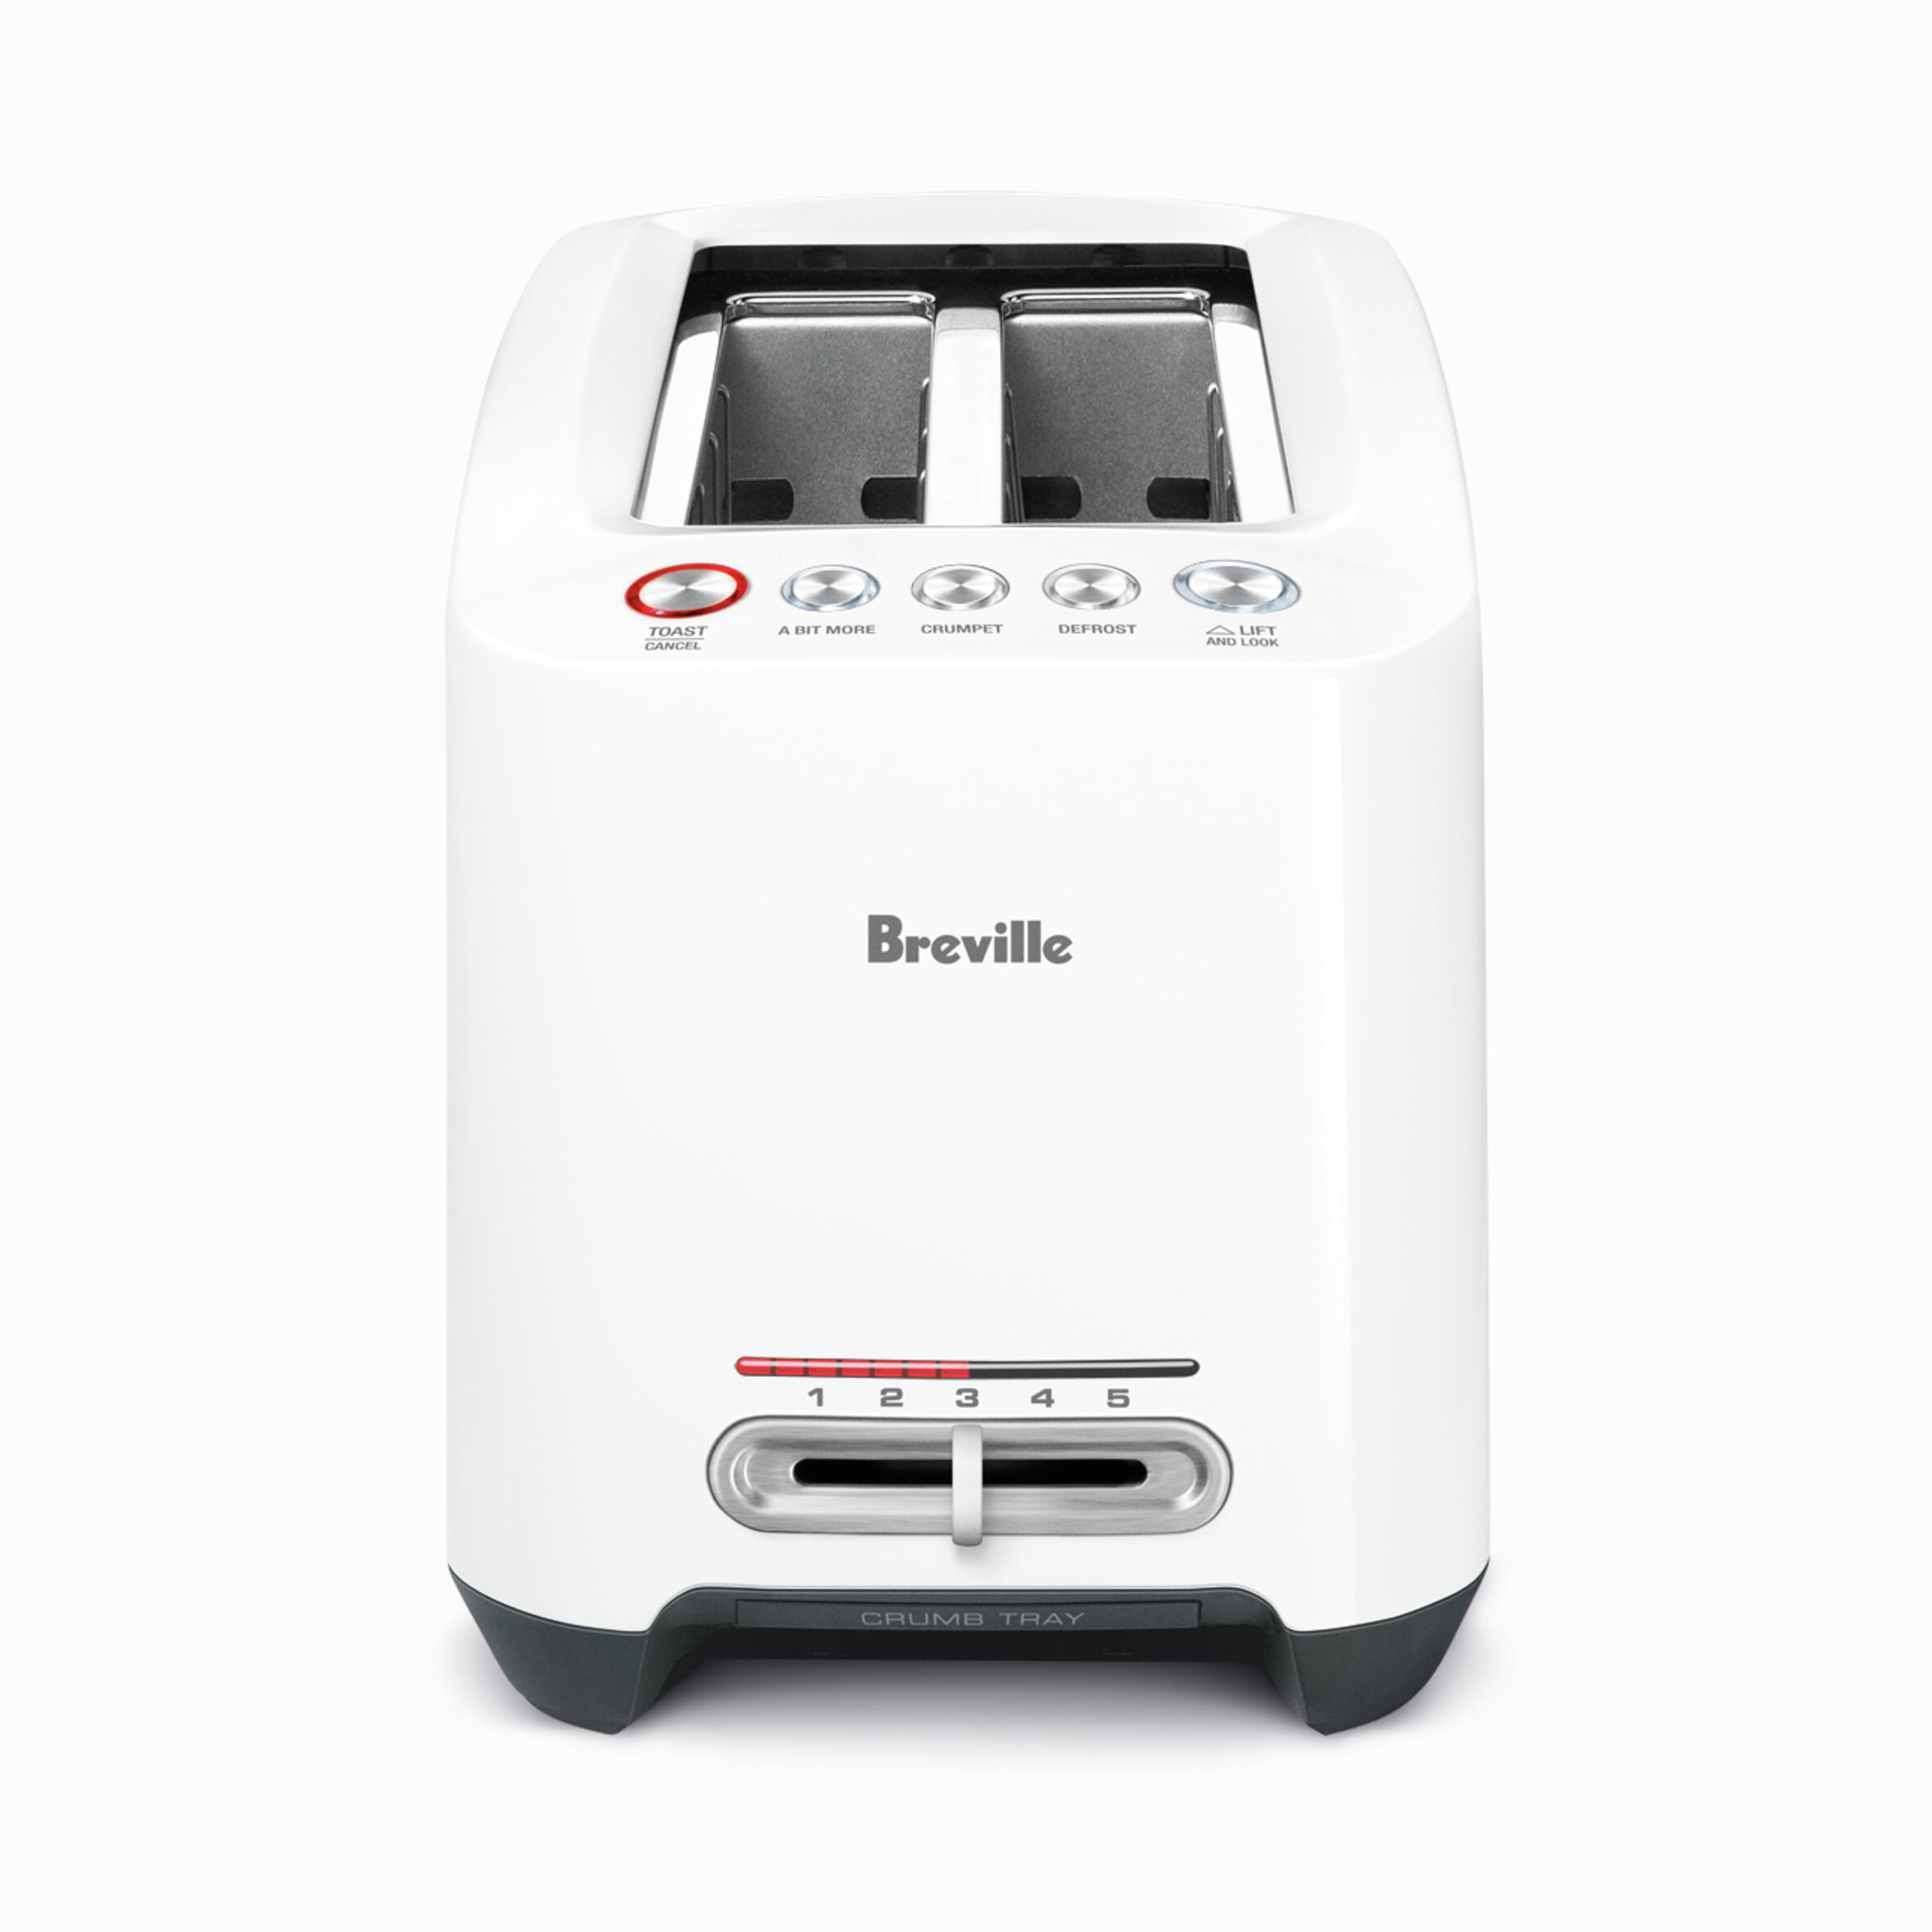 Breville Bit More Toaster - 2-Slice vs 4-Slice 